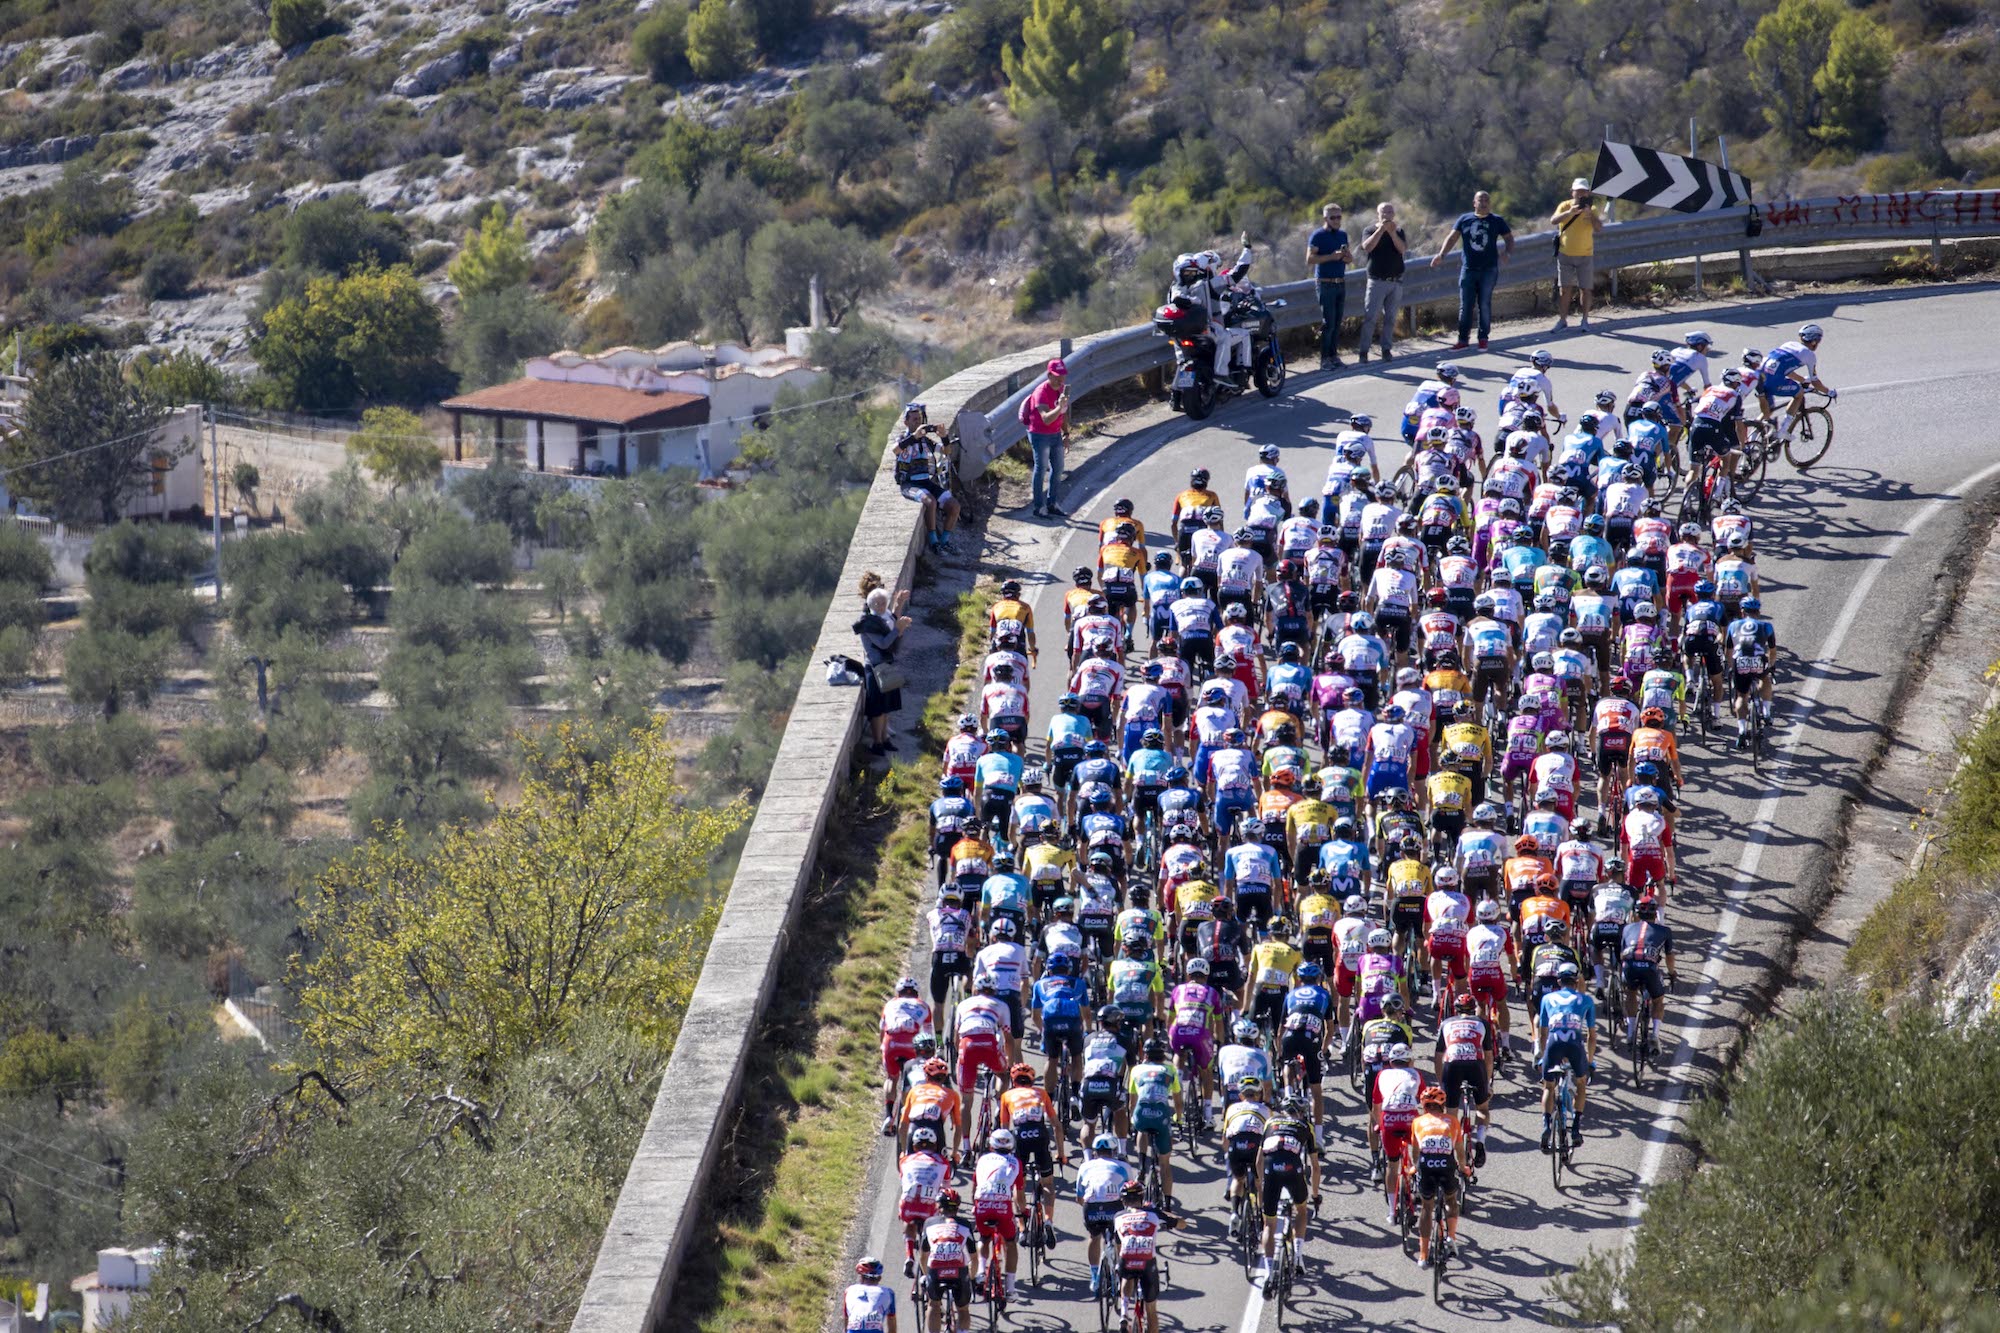 How to live stream the Giro d’Italia 2020 Watch the Italian Grand Tour